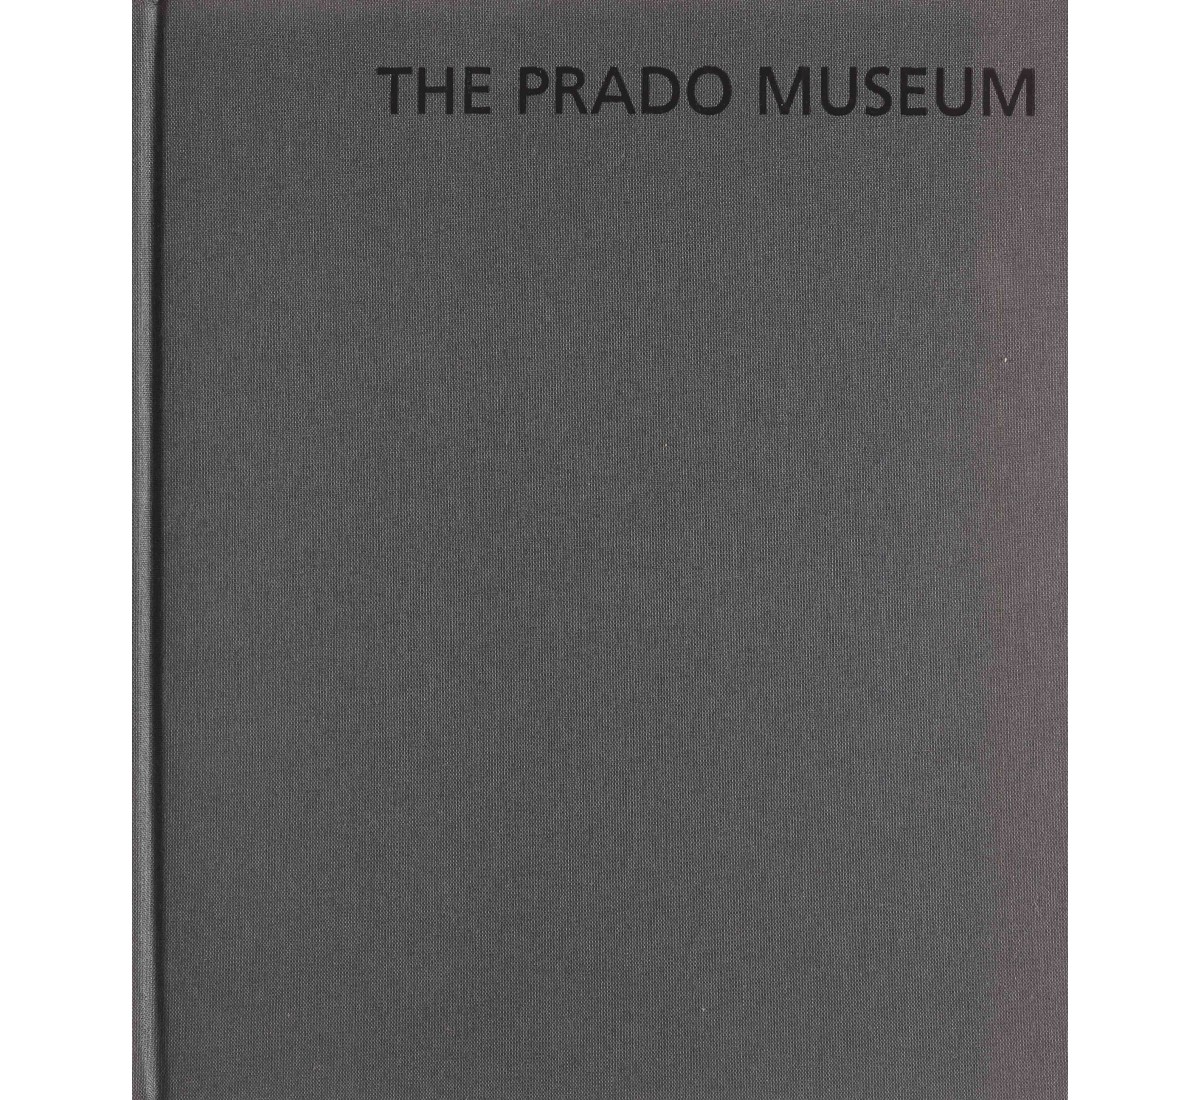 THE PRADO MUSEUM